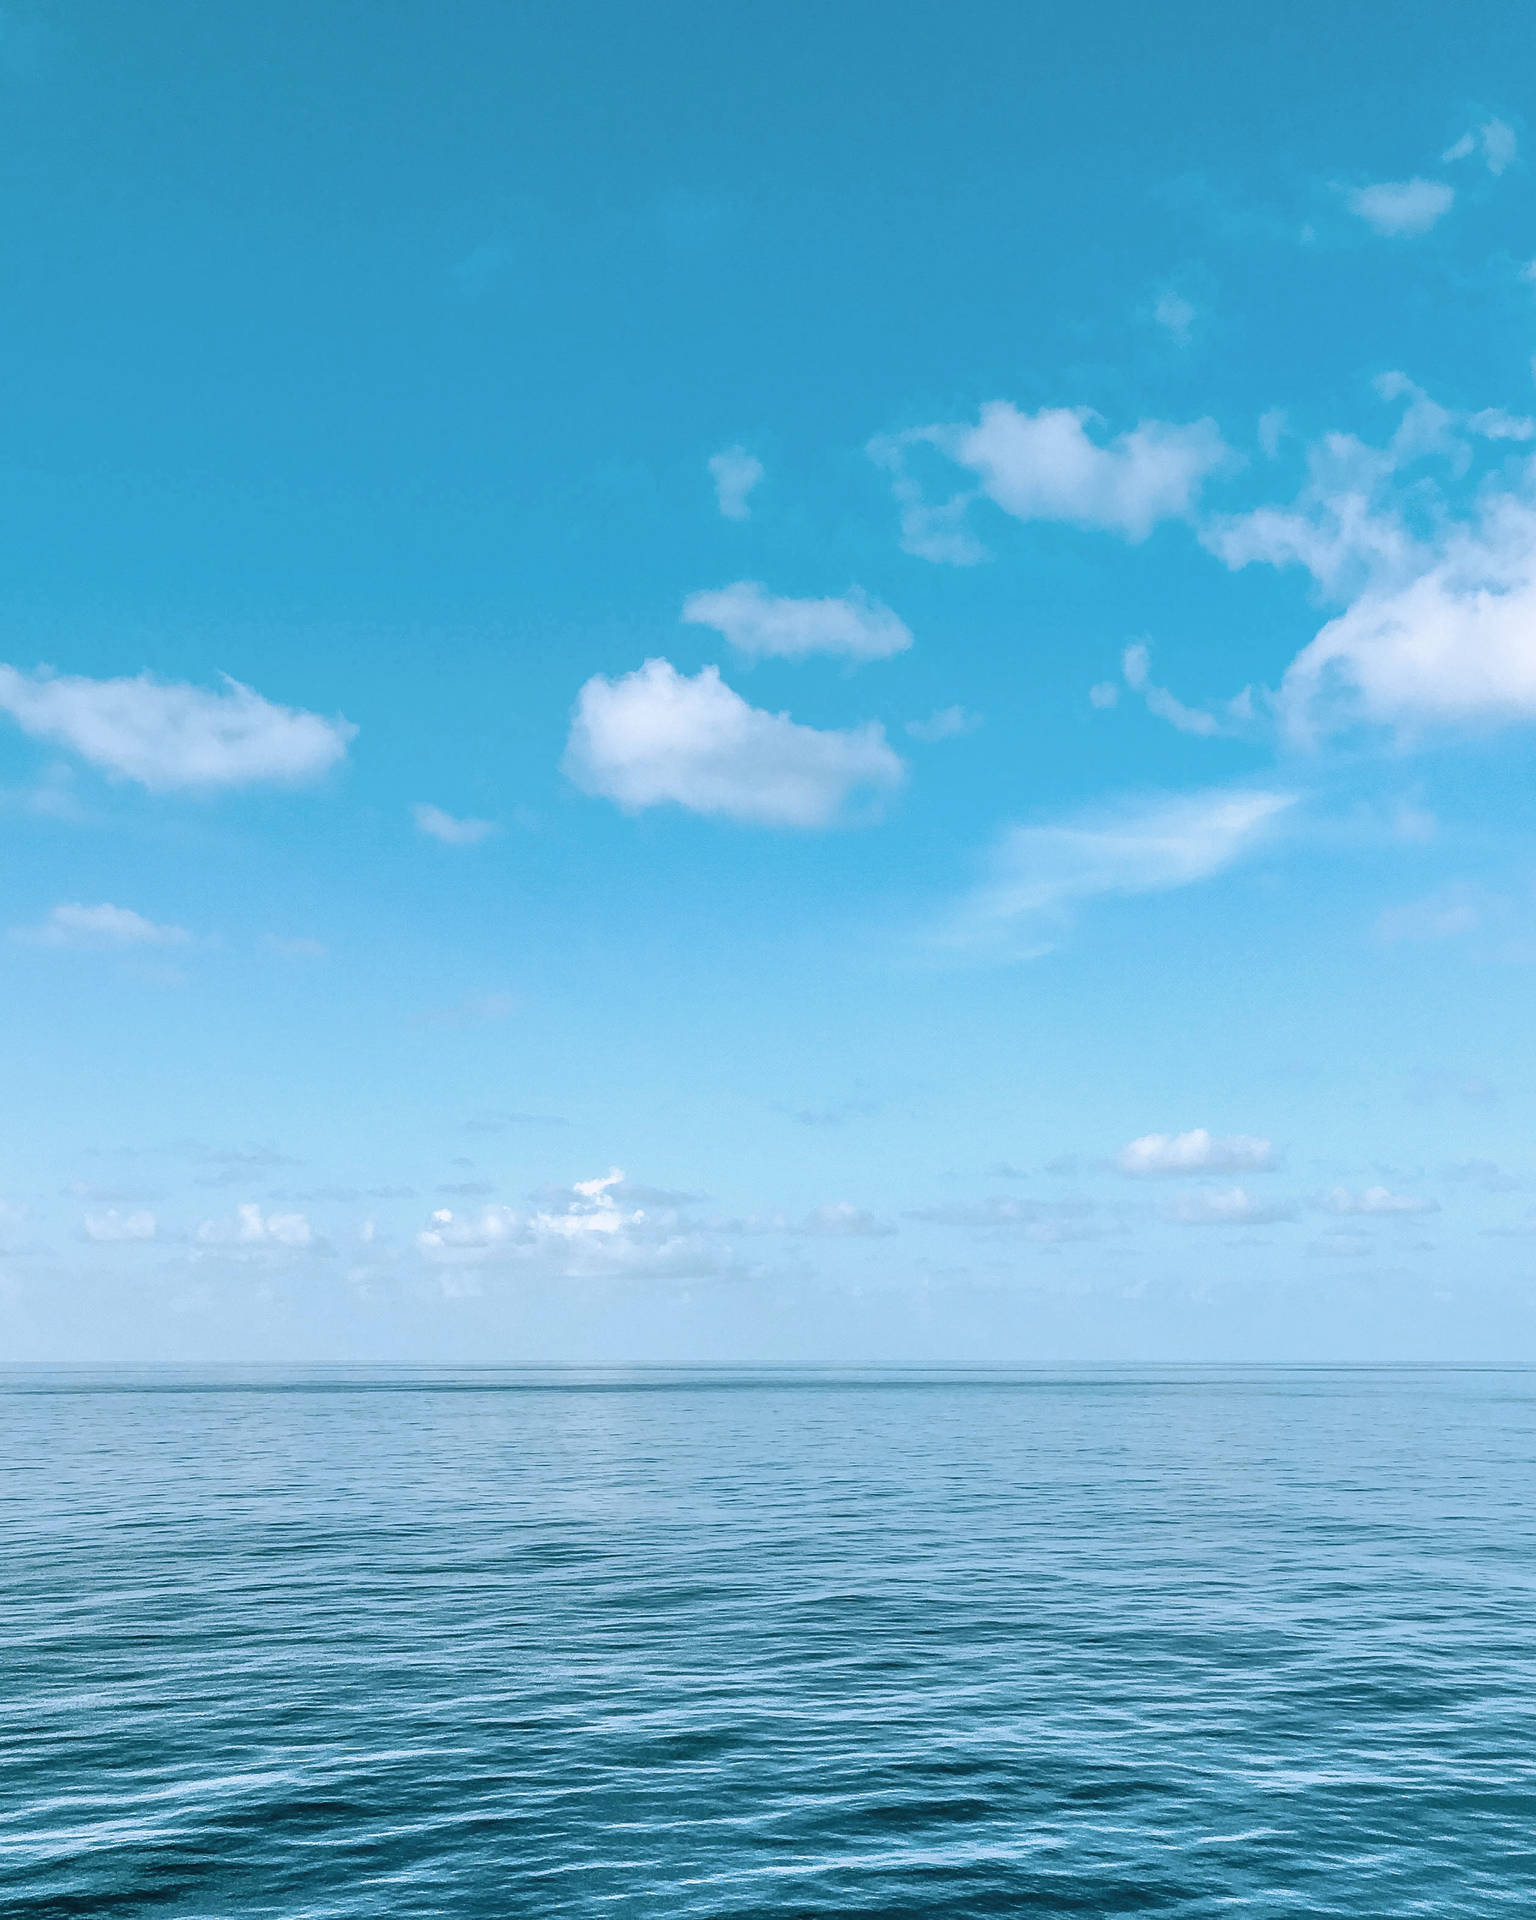 Horizontede Mar Tranquilo Y Cielo Azul. Fondo de pantalla